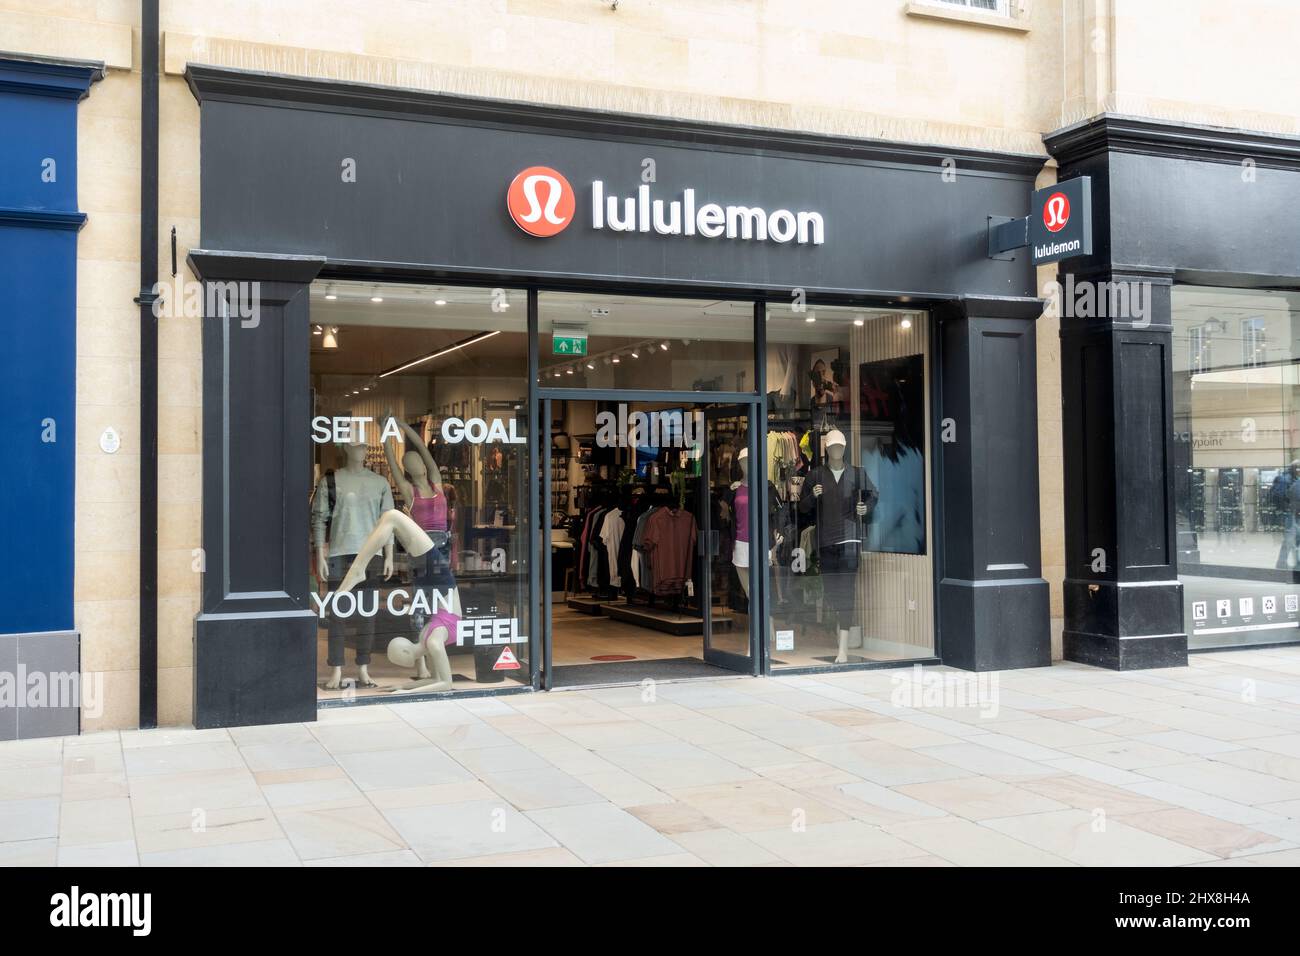 Lululemon athletic clothing store in Kings Road, Chelsea, London